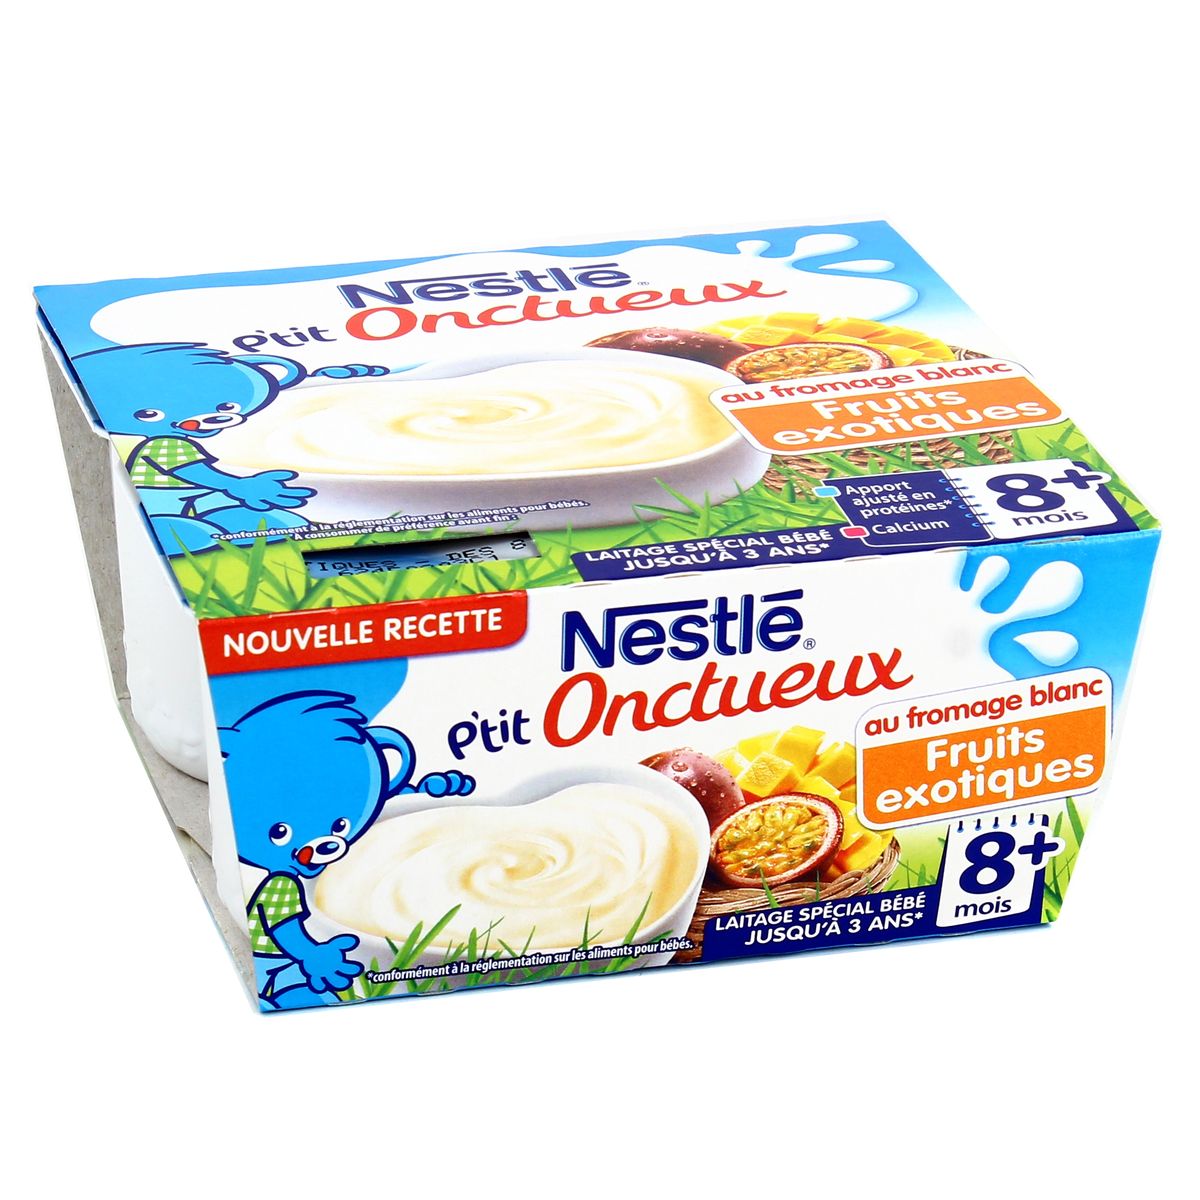 Nestle P Tit Onctueux Au Fromage Blanc Fruits Exotiques Des 8 Mois